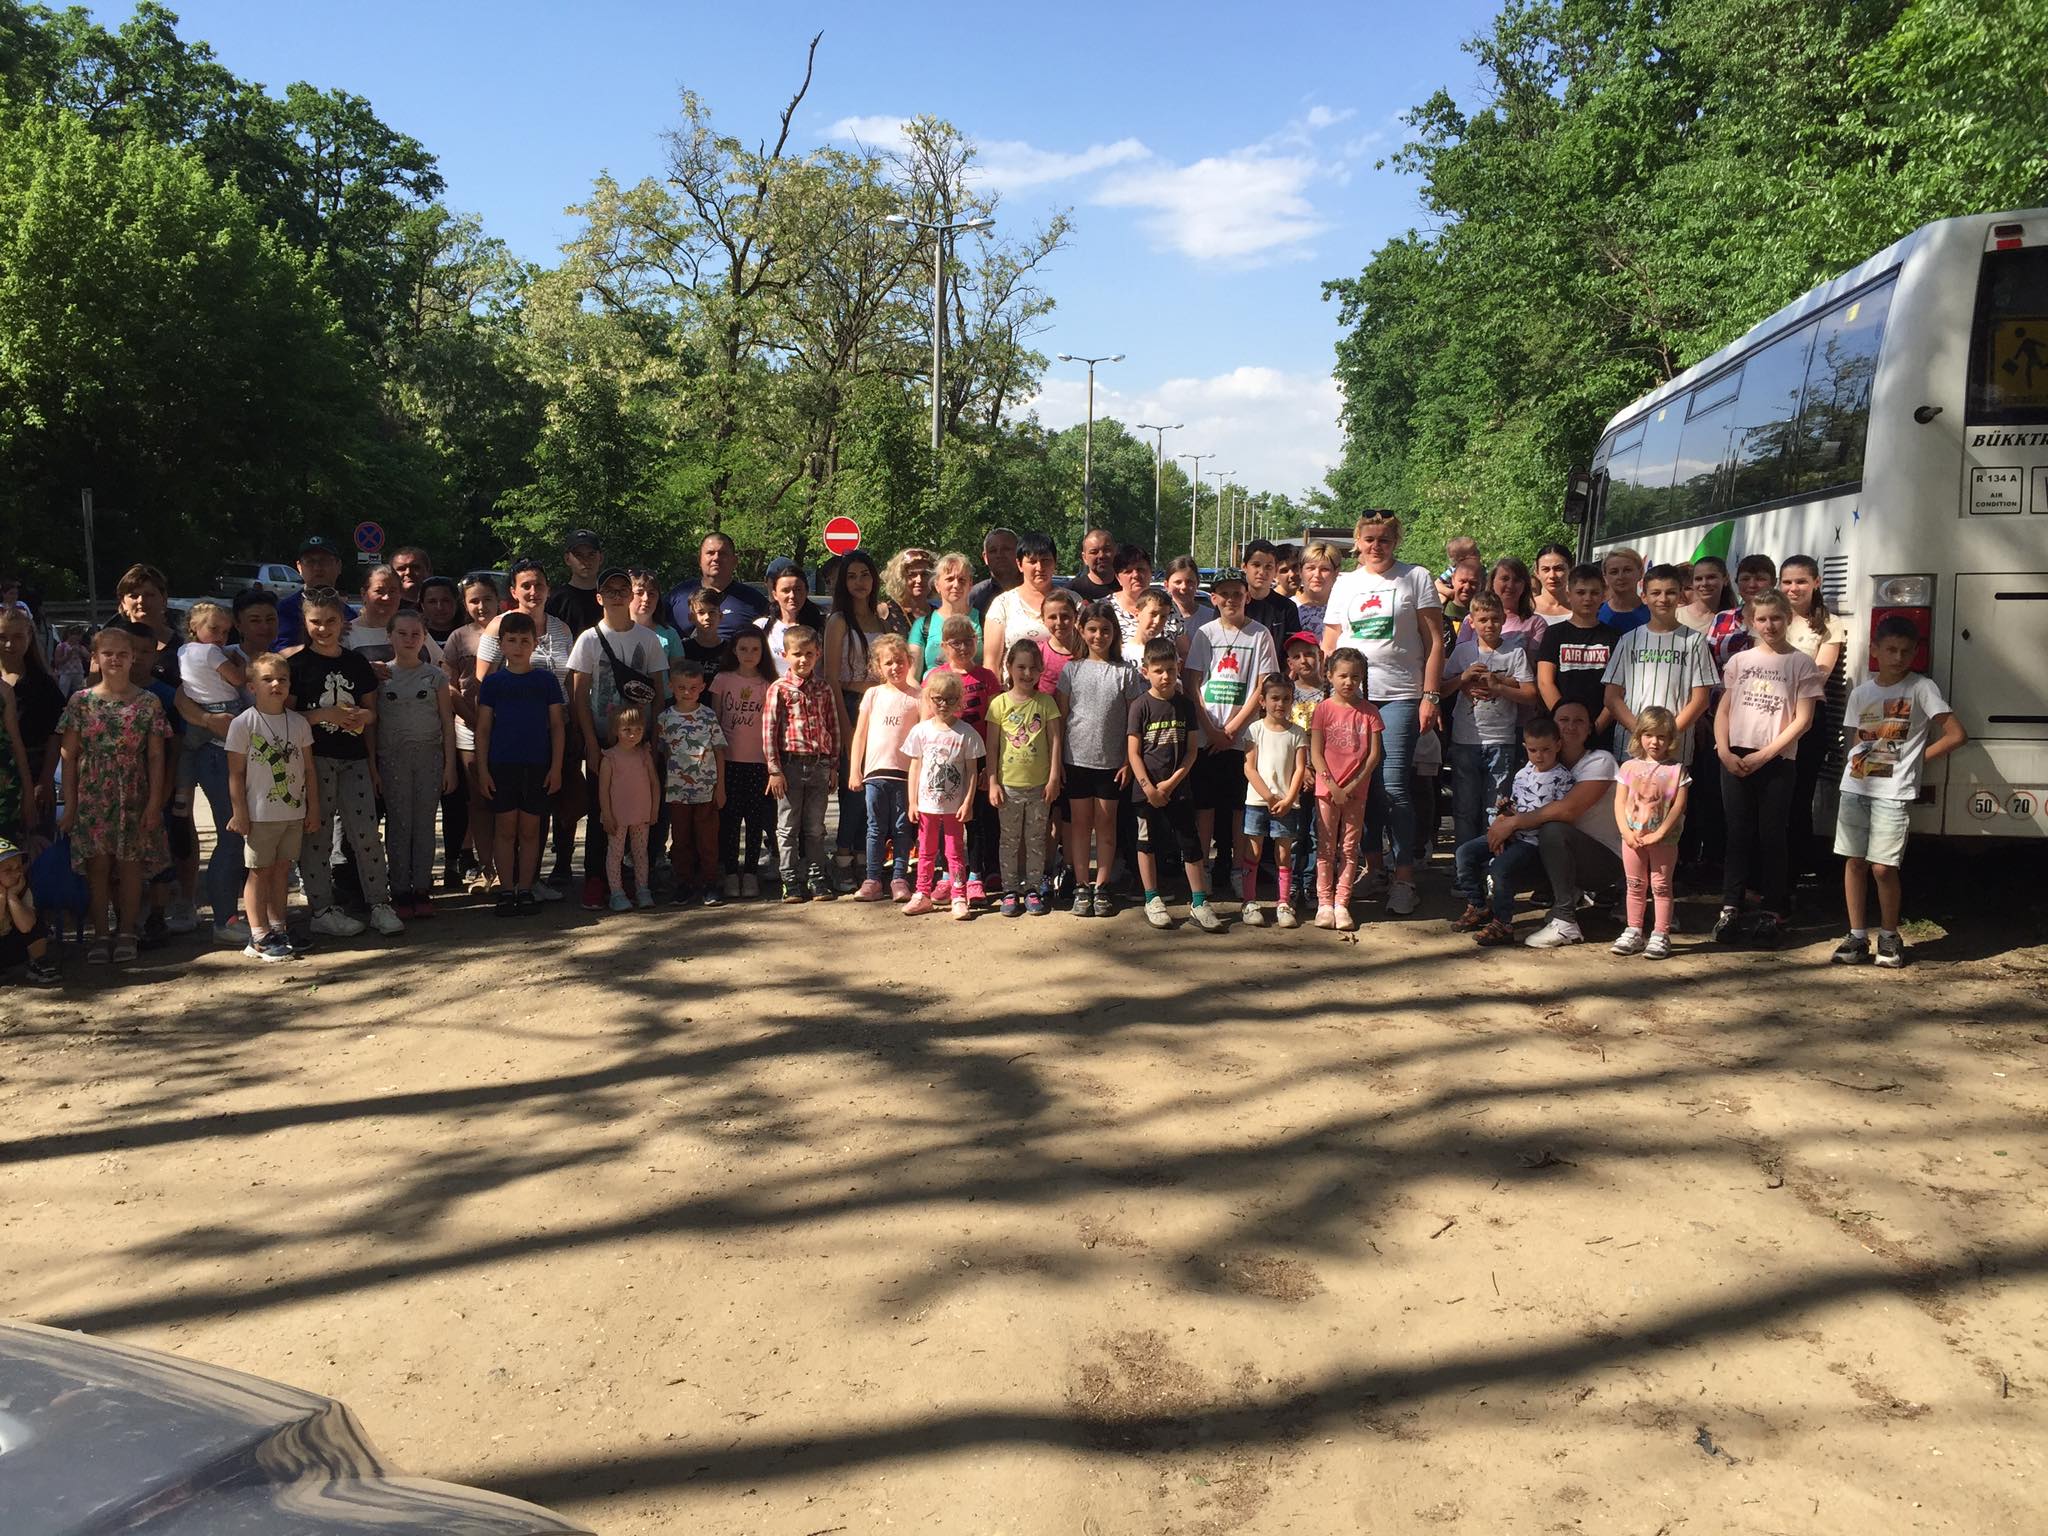 Союз закарпатских венгерских многодетных семей организовал для своих членов экскурсию в зоопарк в городе Ньиредьхаза, один из крупнейших зоопарков Венгрии.